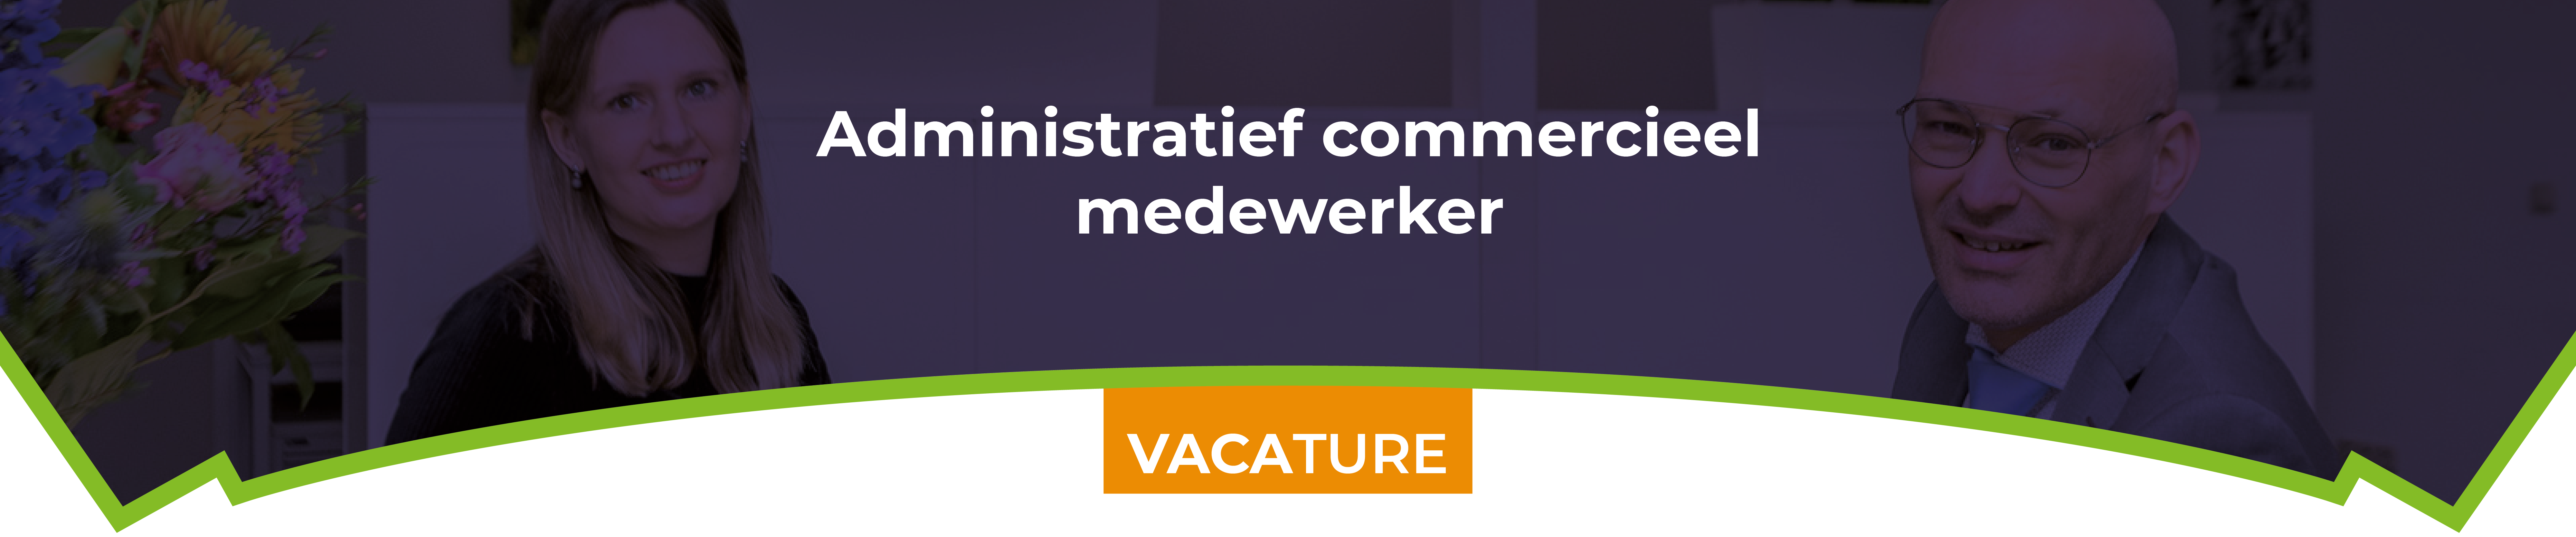 Vacature Administratief commercieel medewerker 2022 – Banner Website – 1920x700px